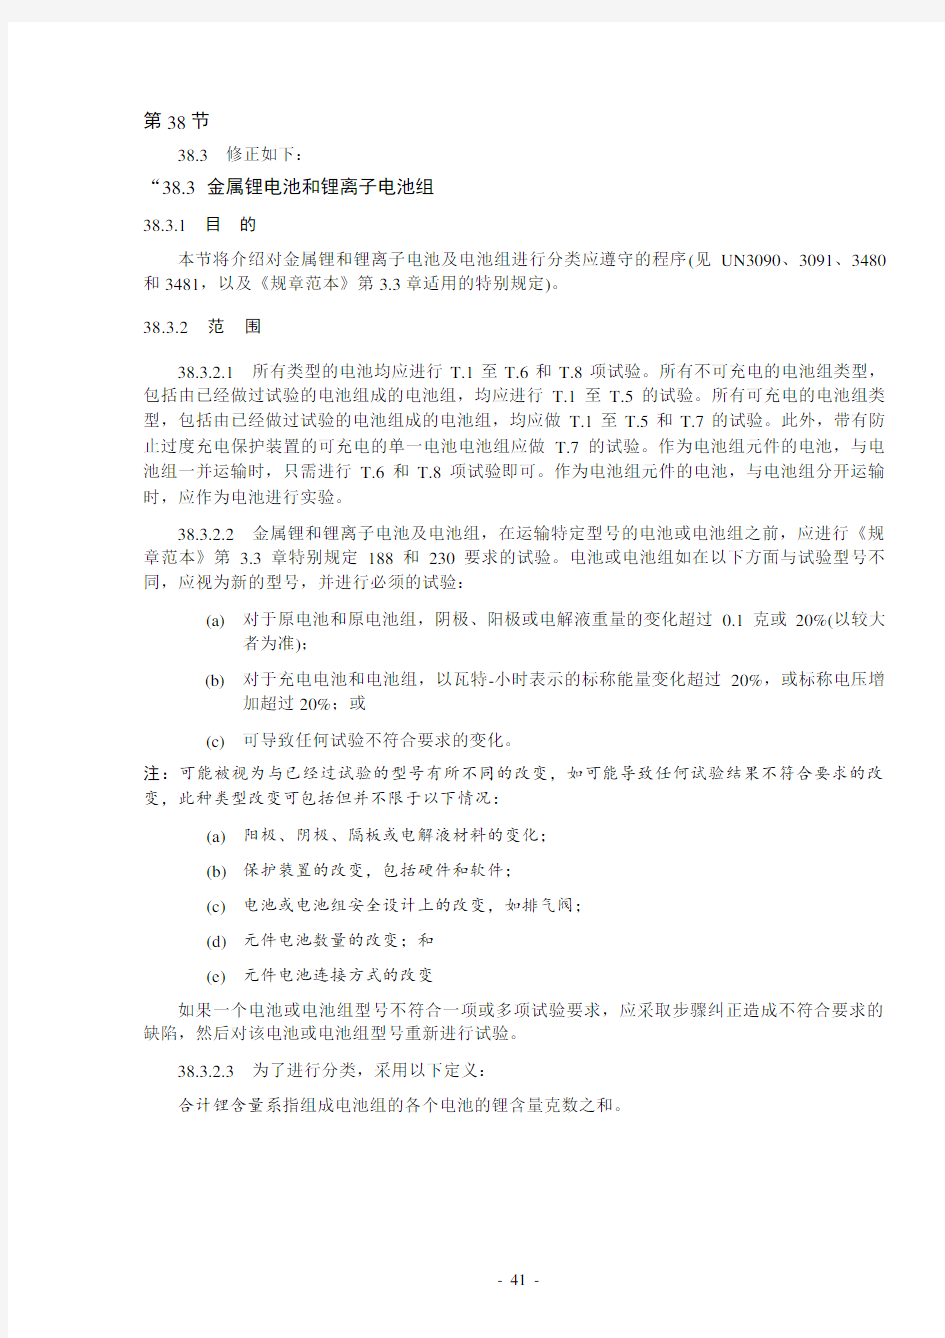 UN38.3 第五修订版修正1(中文版)